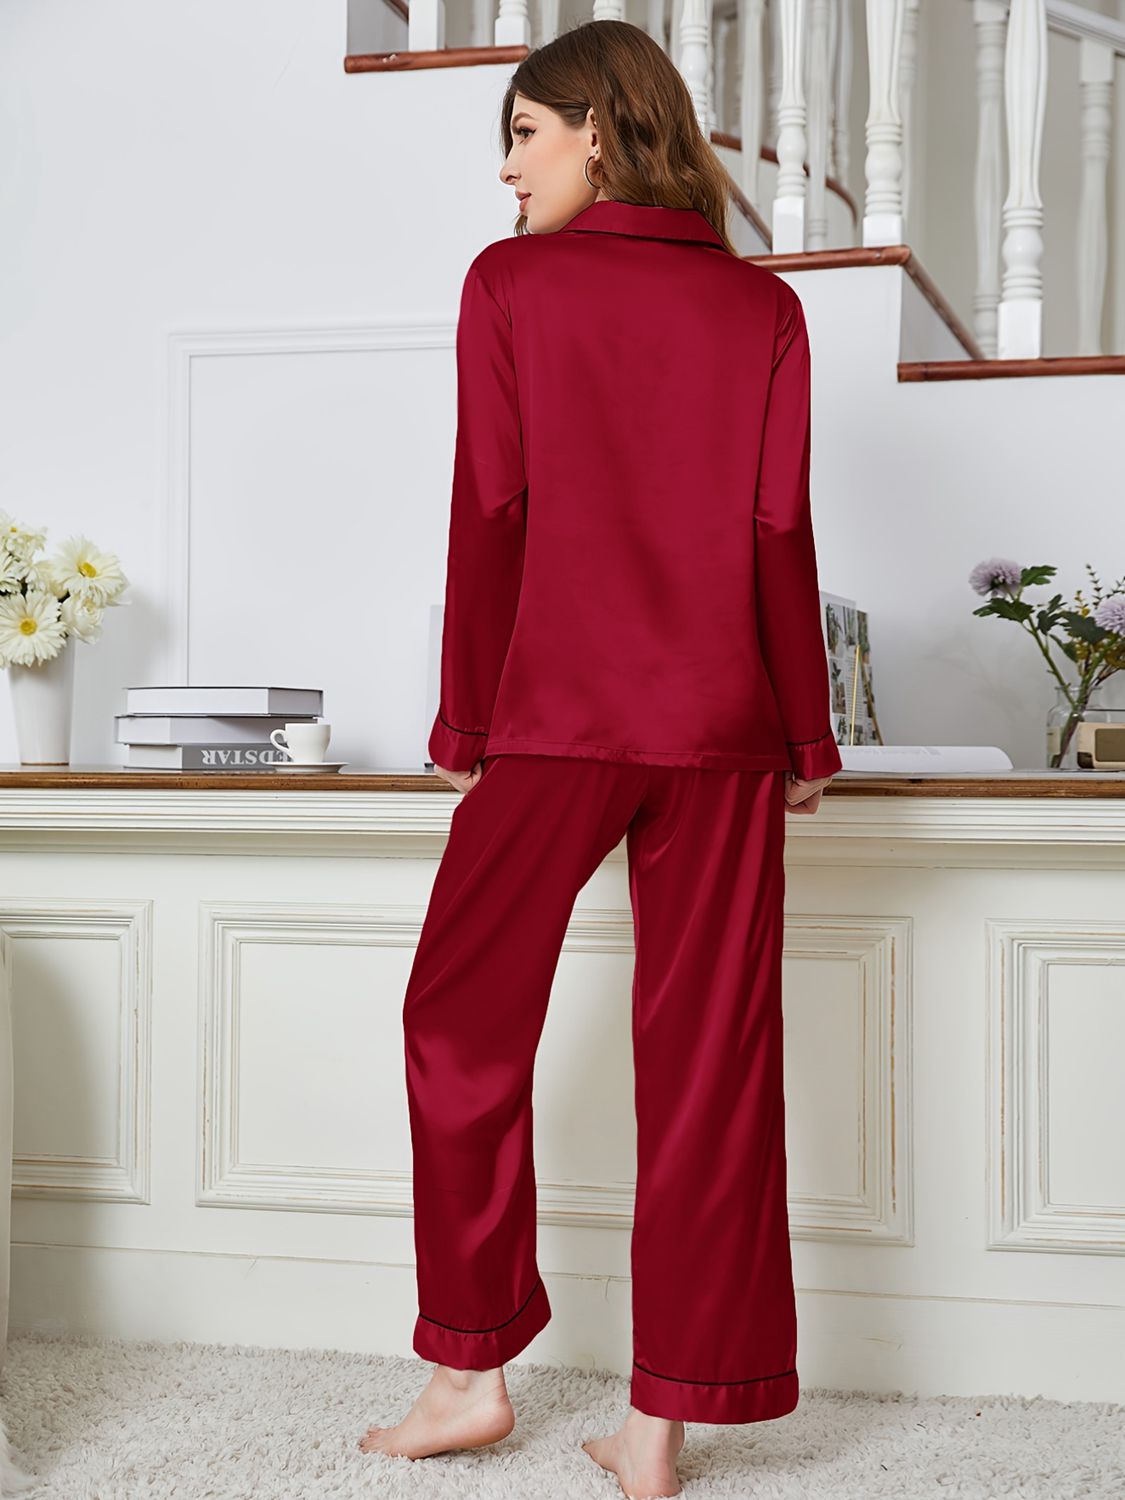 Women’s Lapel Collar Long Sleeve Top and Pants Pajama Set